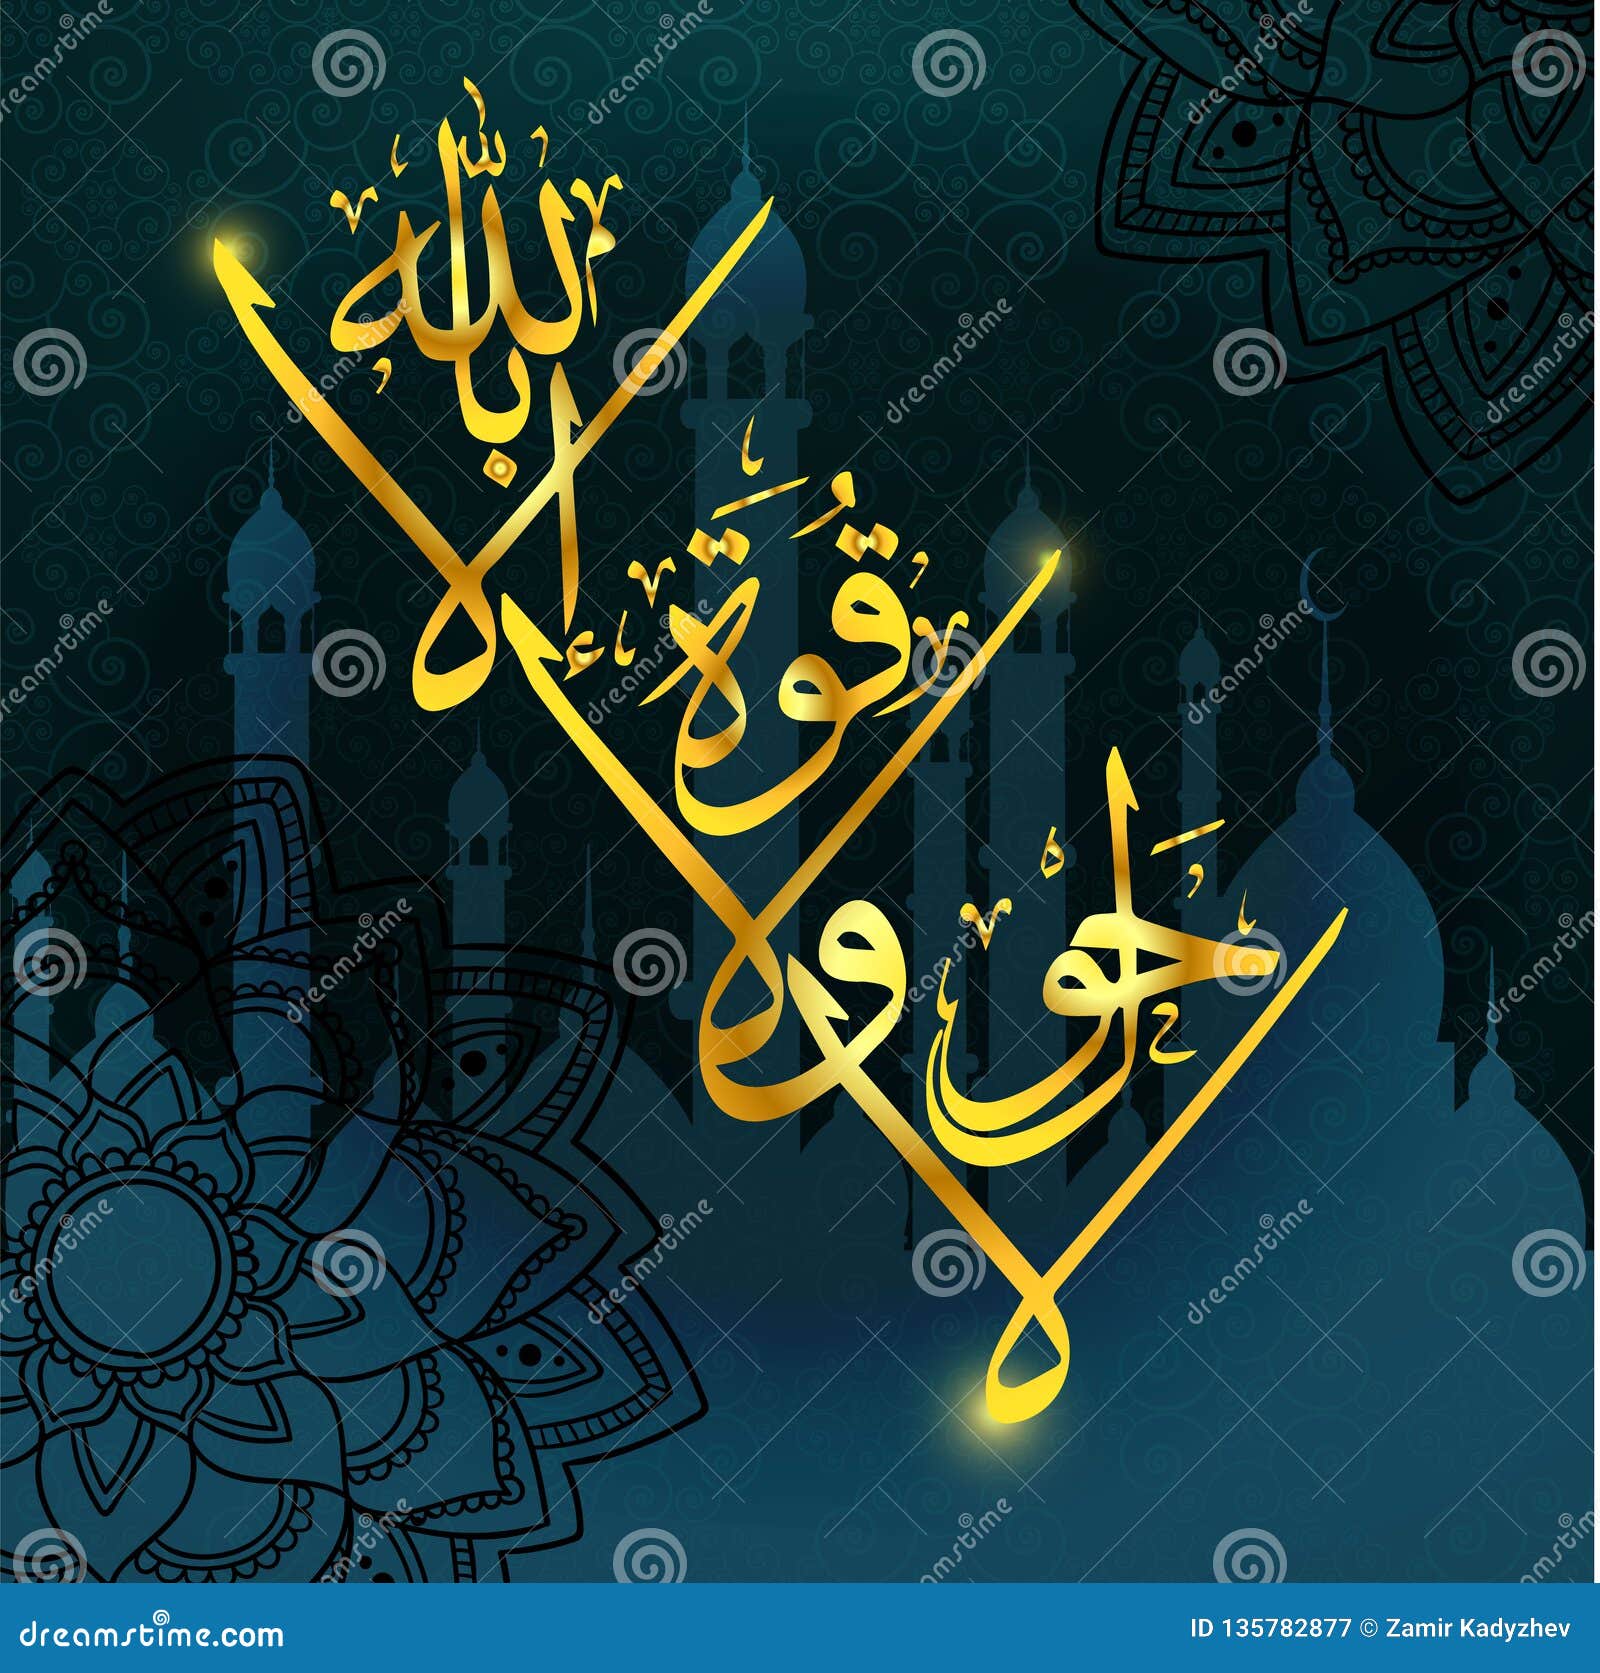 arabic calligraphy mashaallah la haual la kuta il bilillahaha,  s in muslim holidays. means